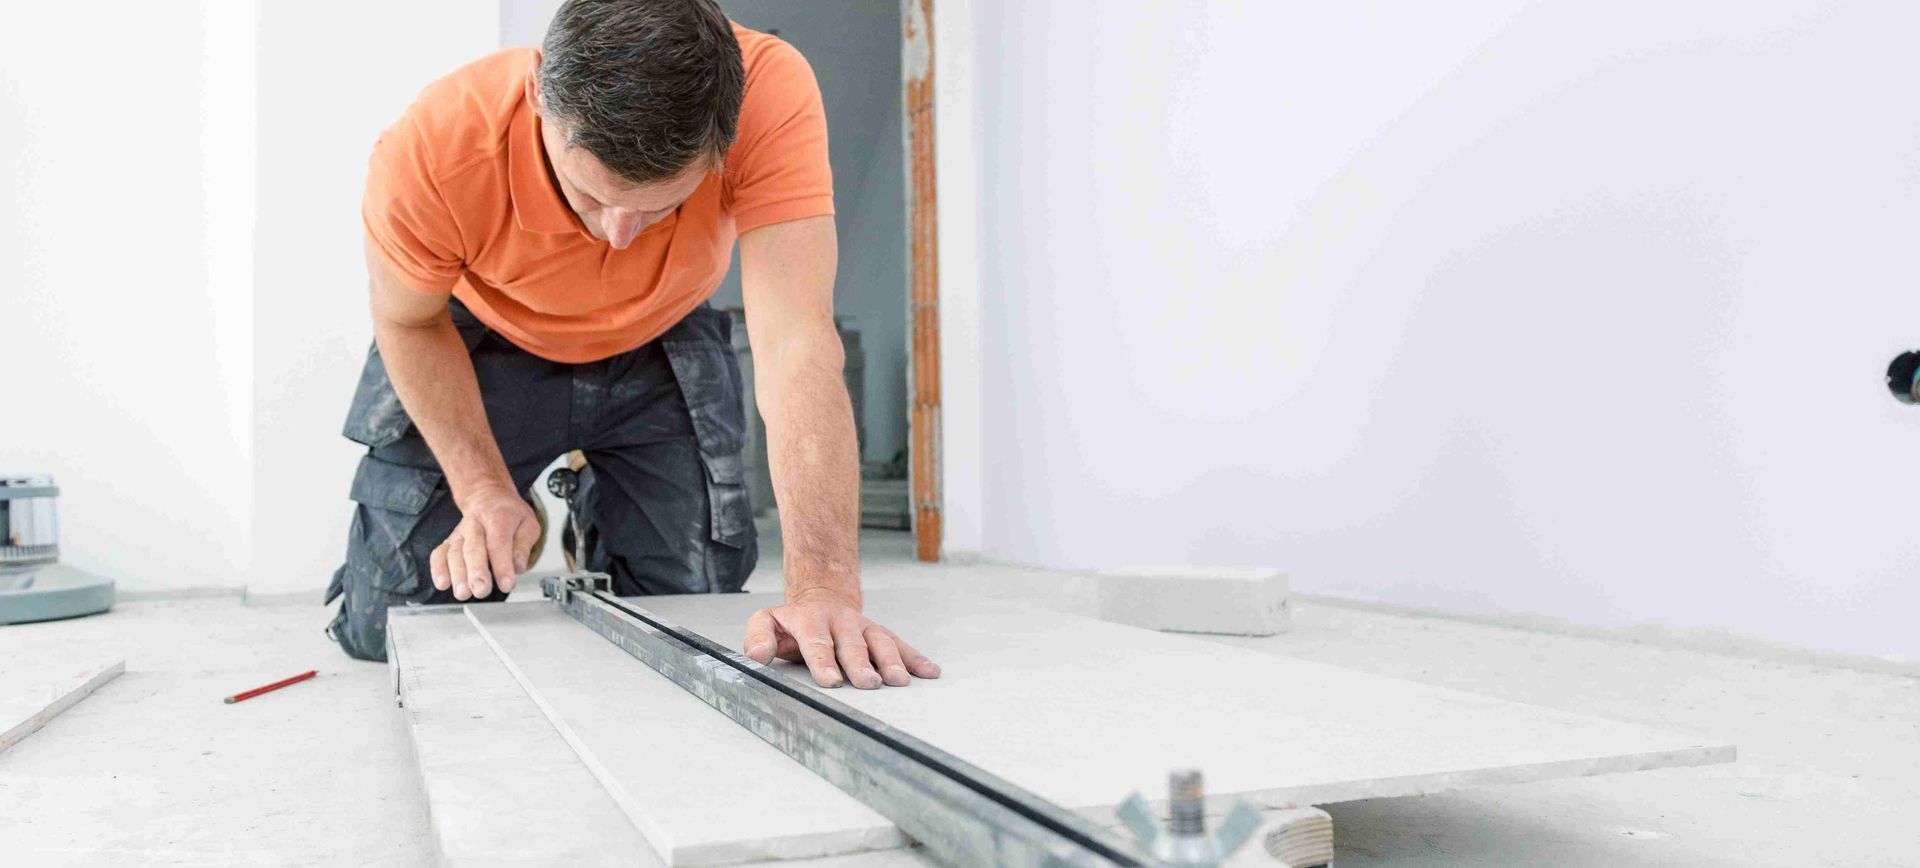 A man cutting tiles for a bathroom floor